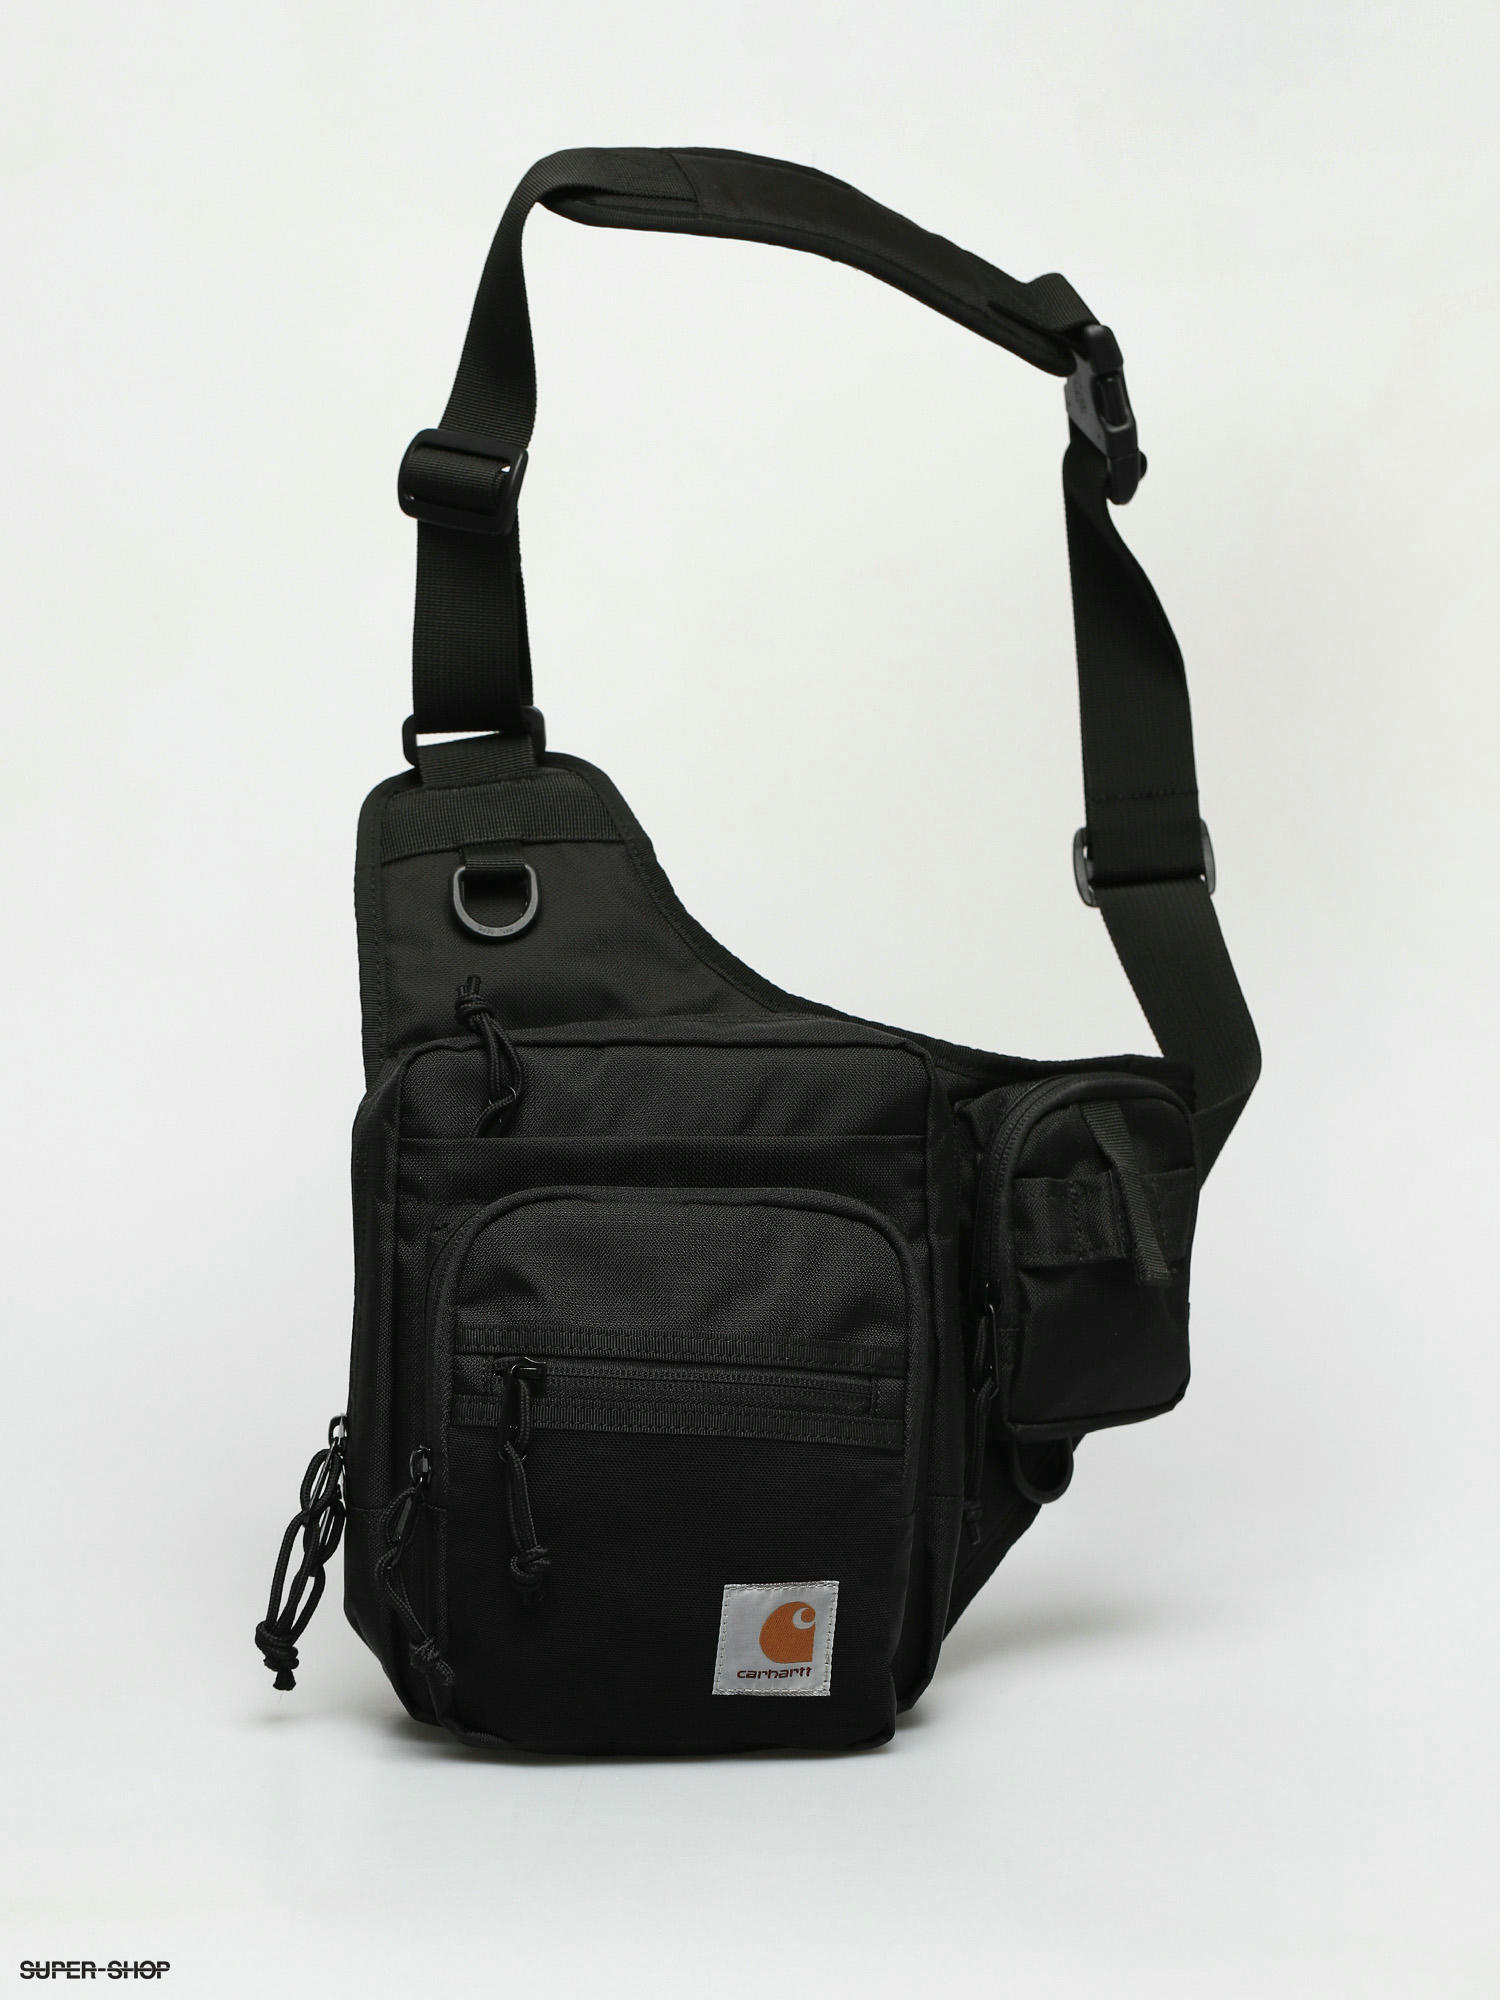 Carhartt Delta Shoulder Bag In Black